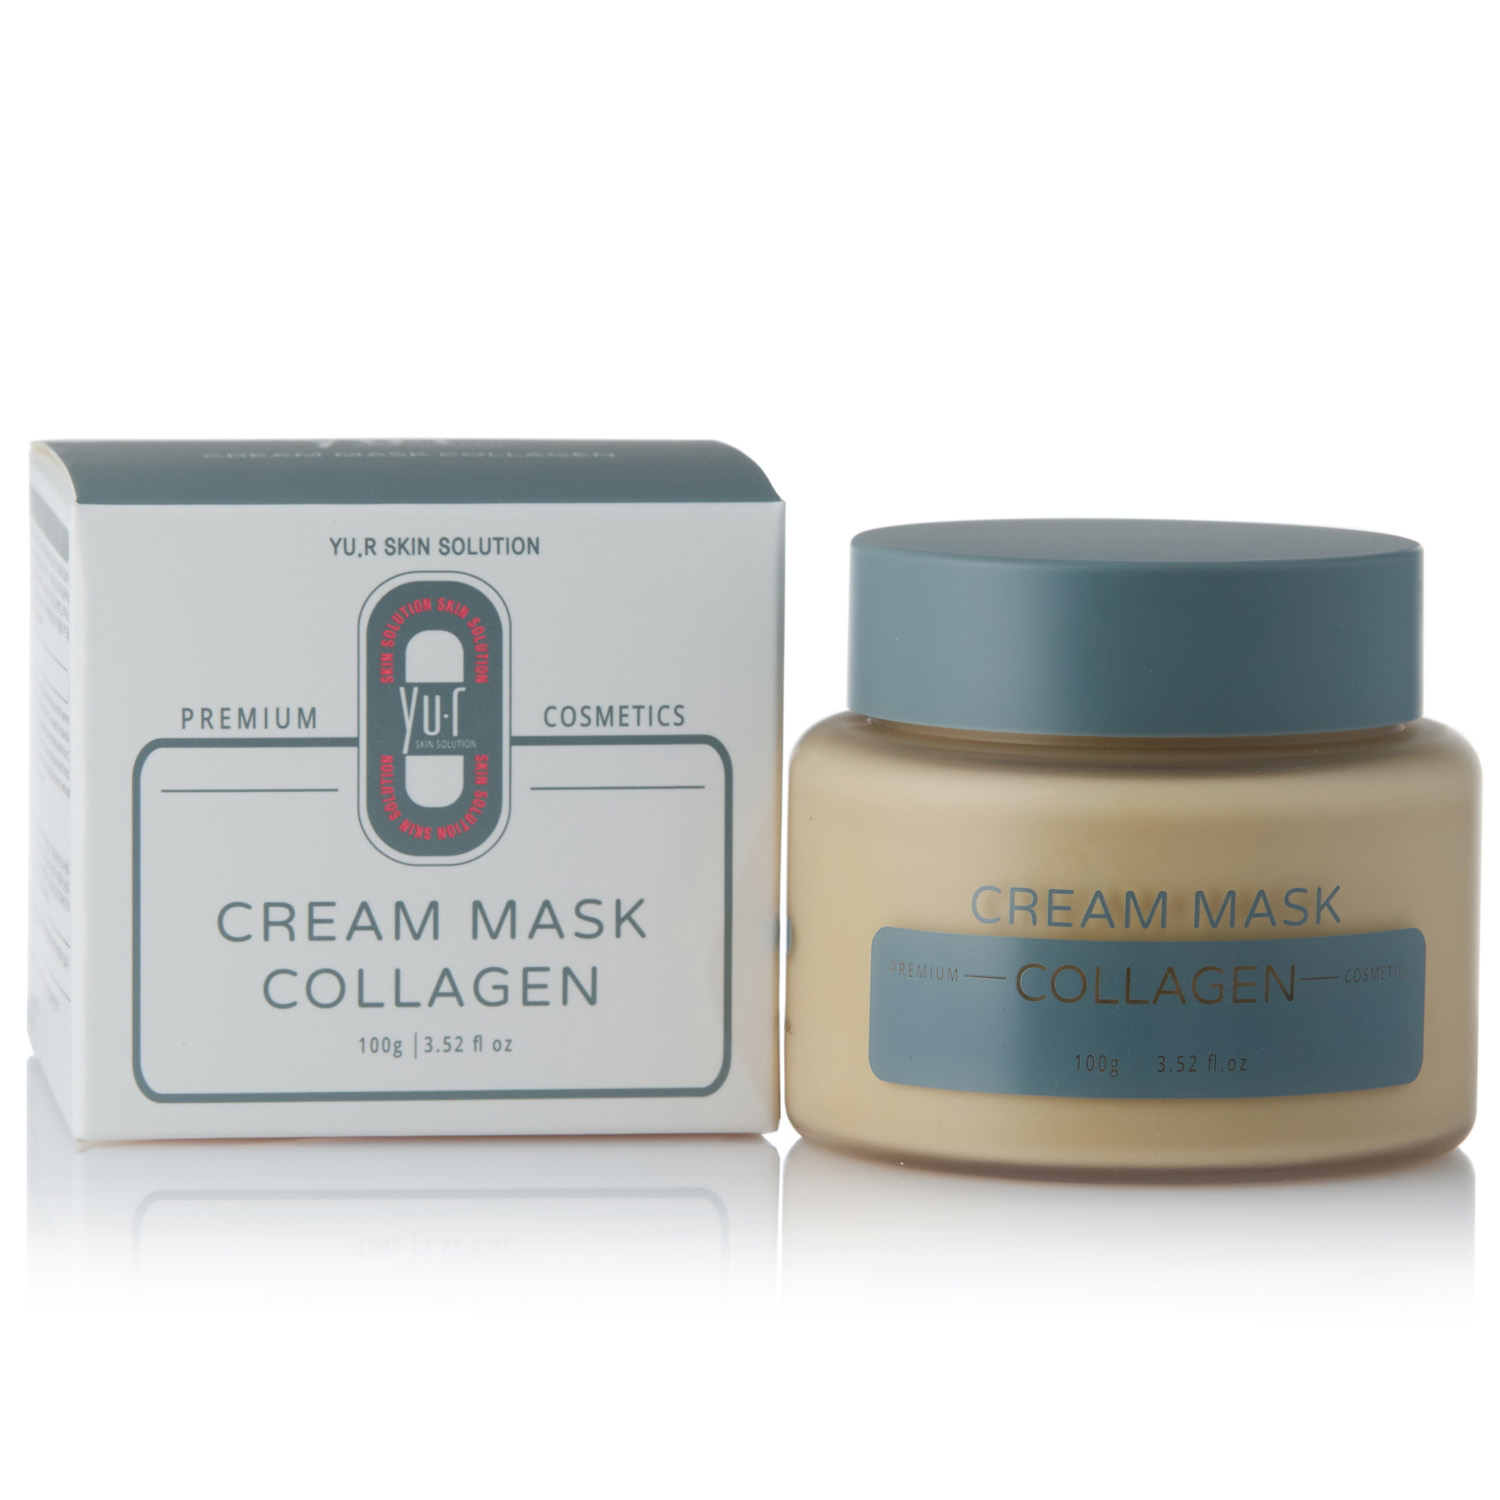 Yu.R Кремовая маска с коллагеном Cream Mask Collagen, 100 г (Yu.R, ) yu r кремовая маска с коллагеном cream mask collagen 100 г yu r